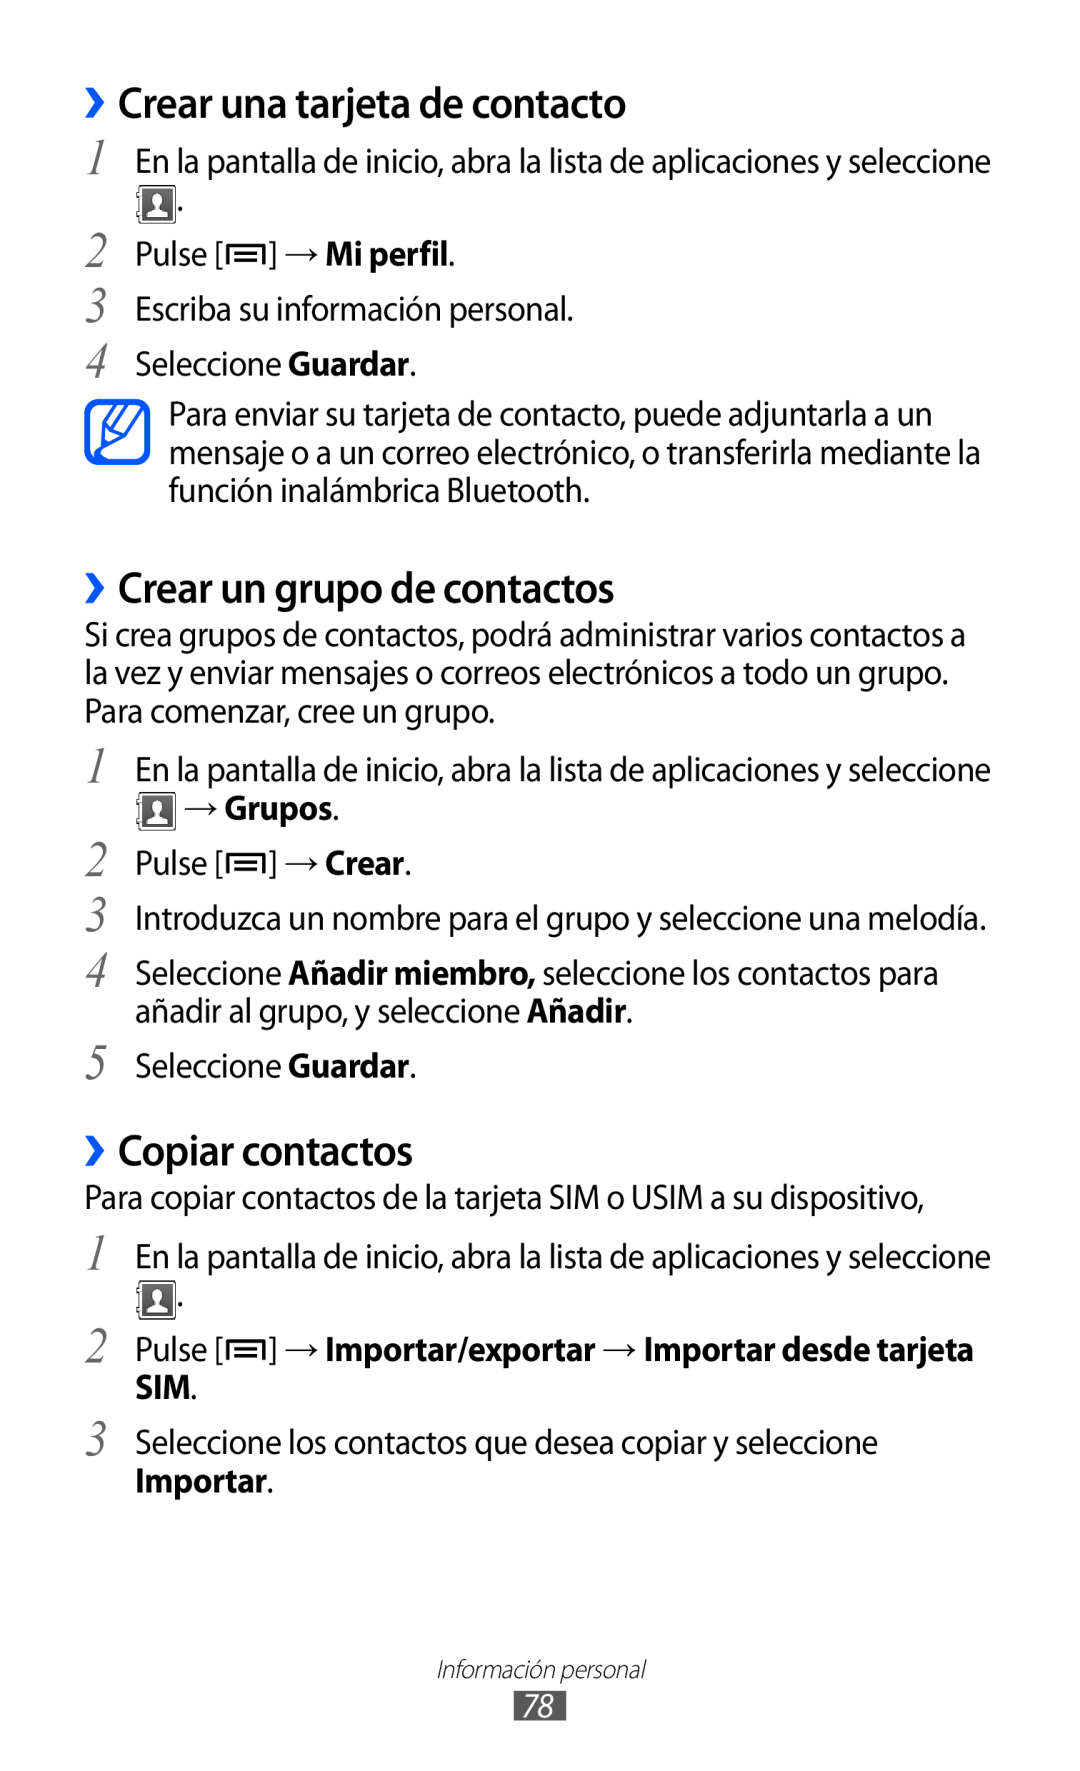 Samsung GT-S6500ZYDCOA manual ››Crear una tarjeta de contacto, ››Crear un grupo de contactos, ››Copiar contactos, → Grupos 